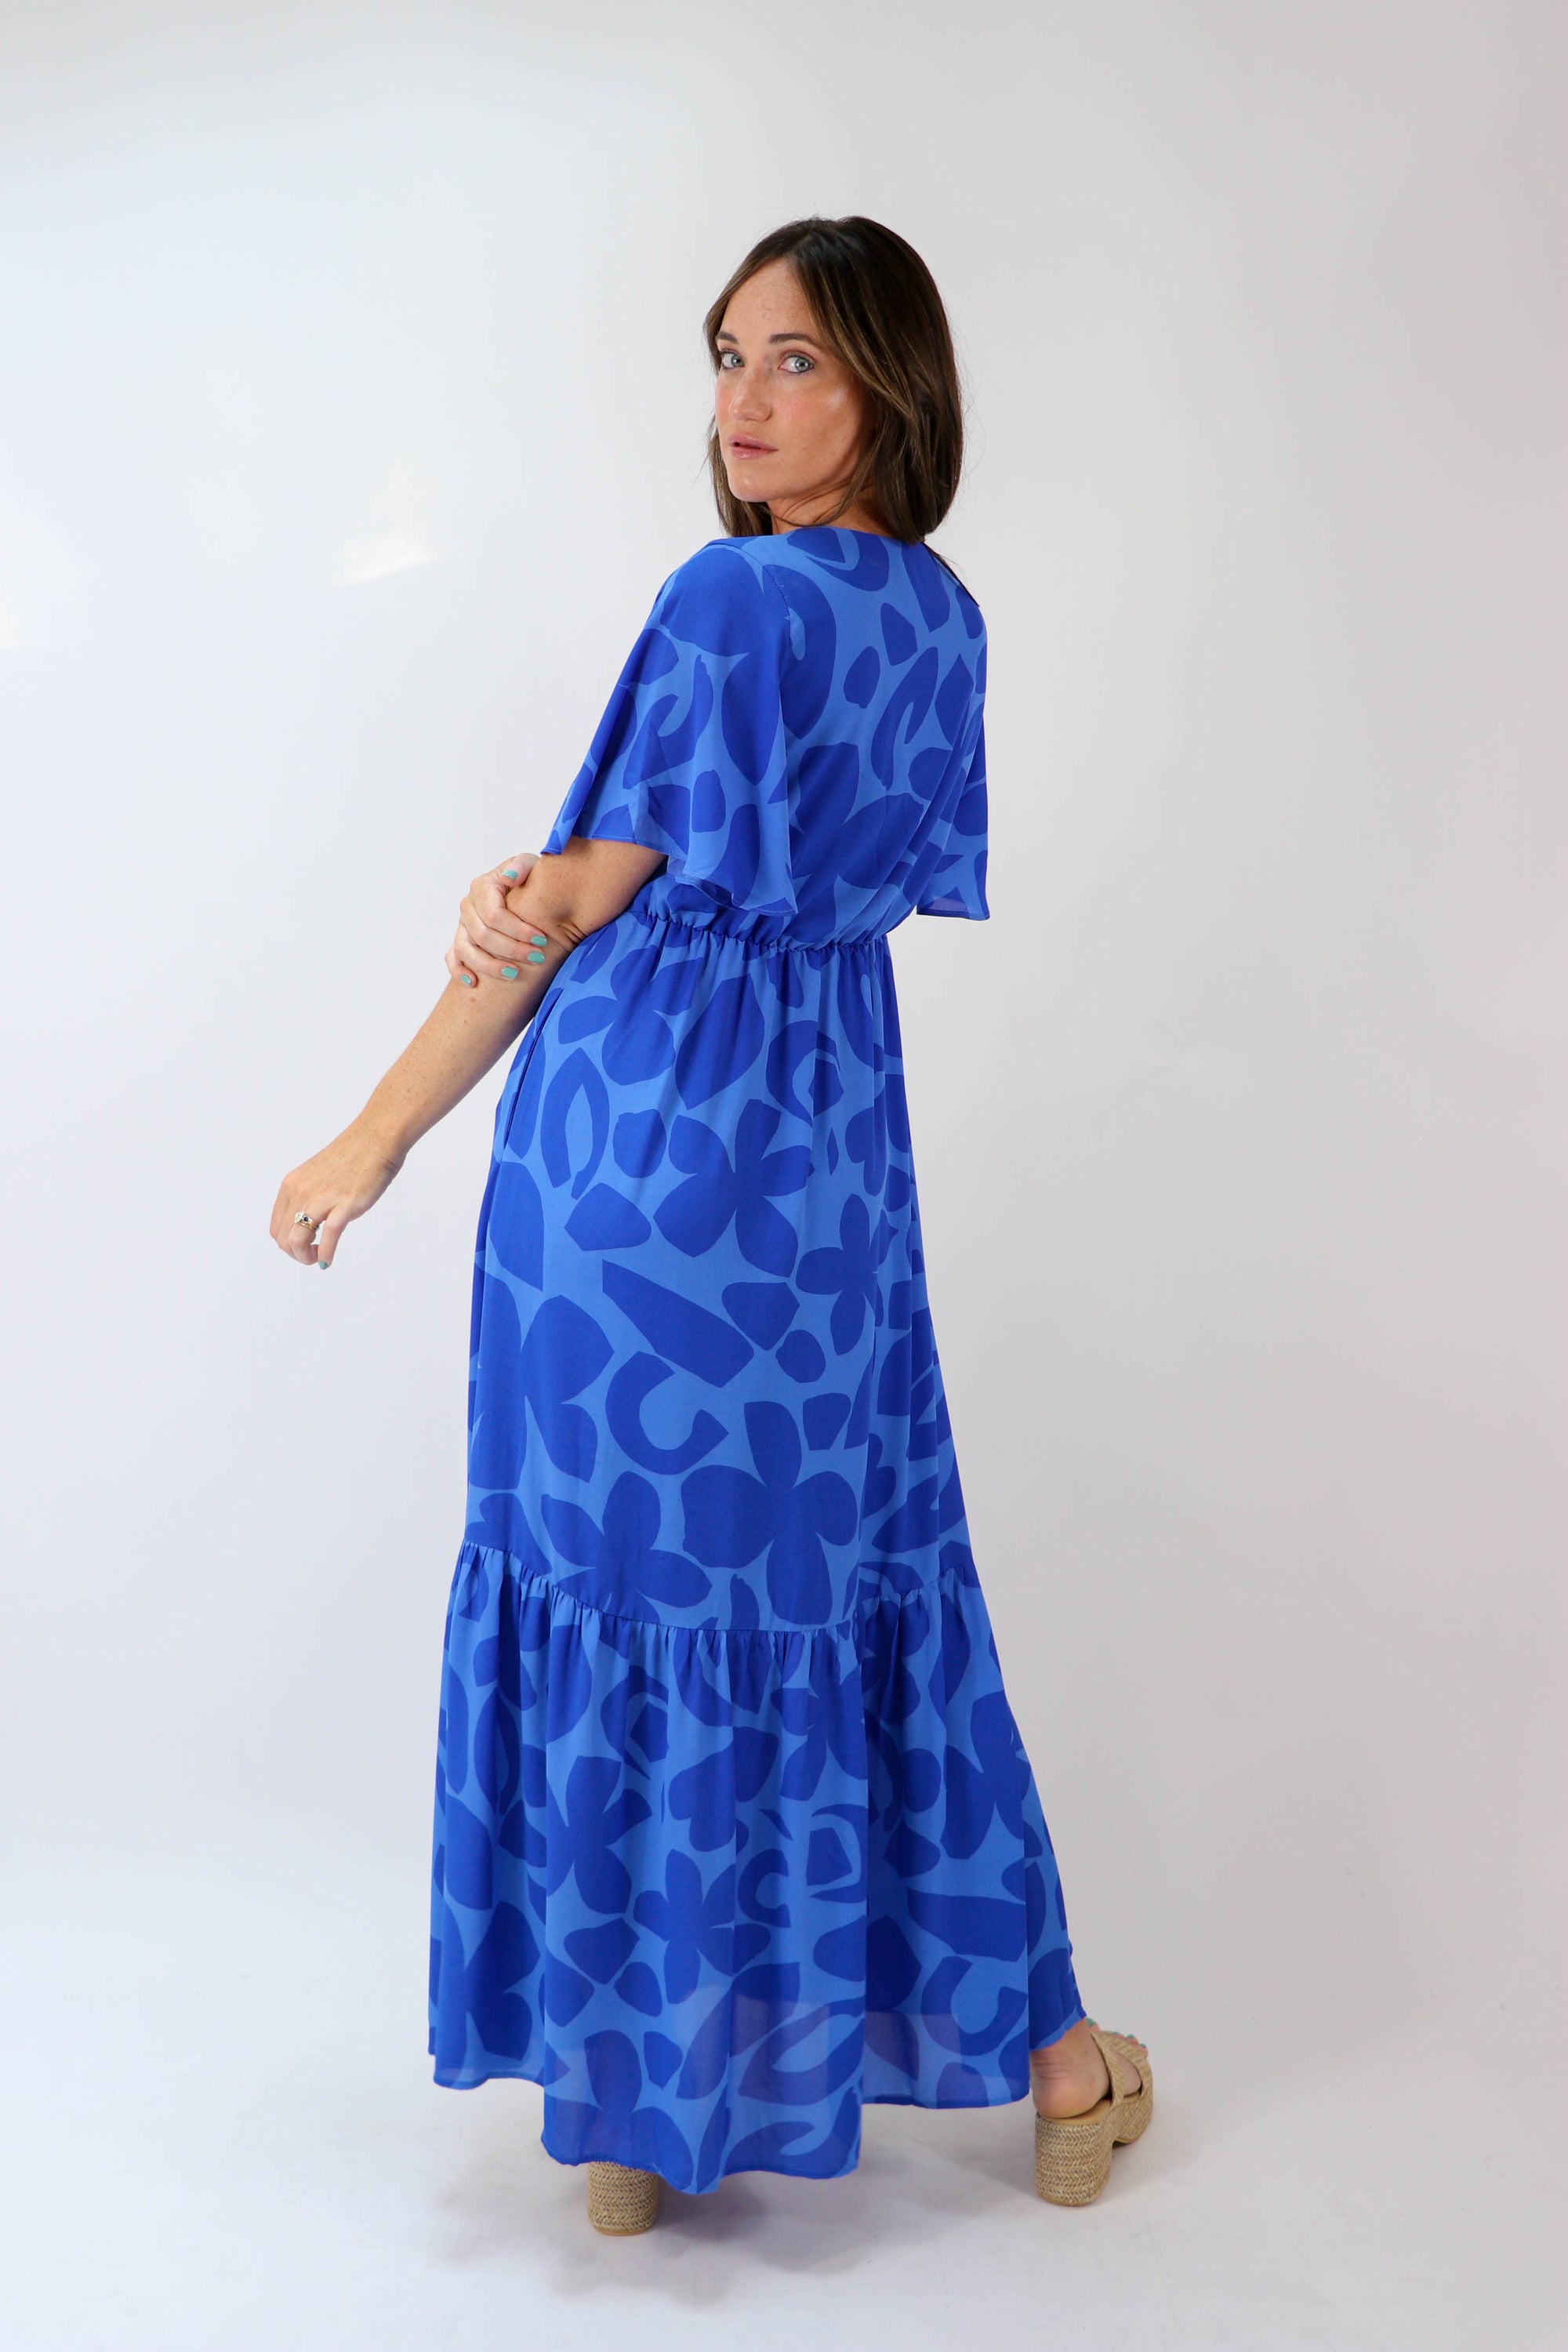 Blue Floral Maxi Dress | Sweetest Stitch Women's Online Boutique